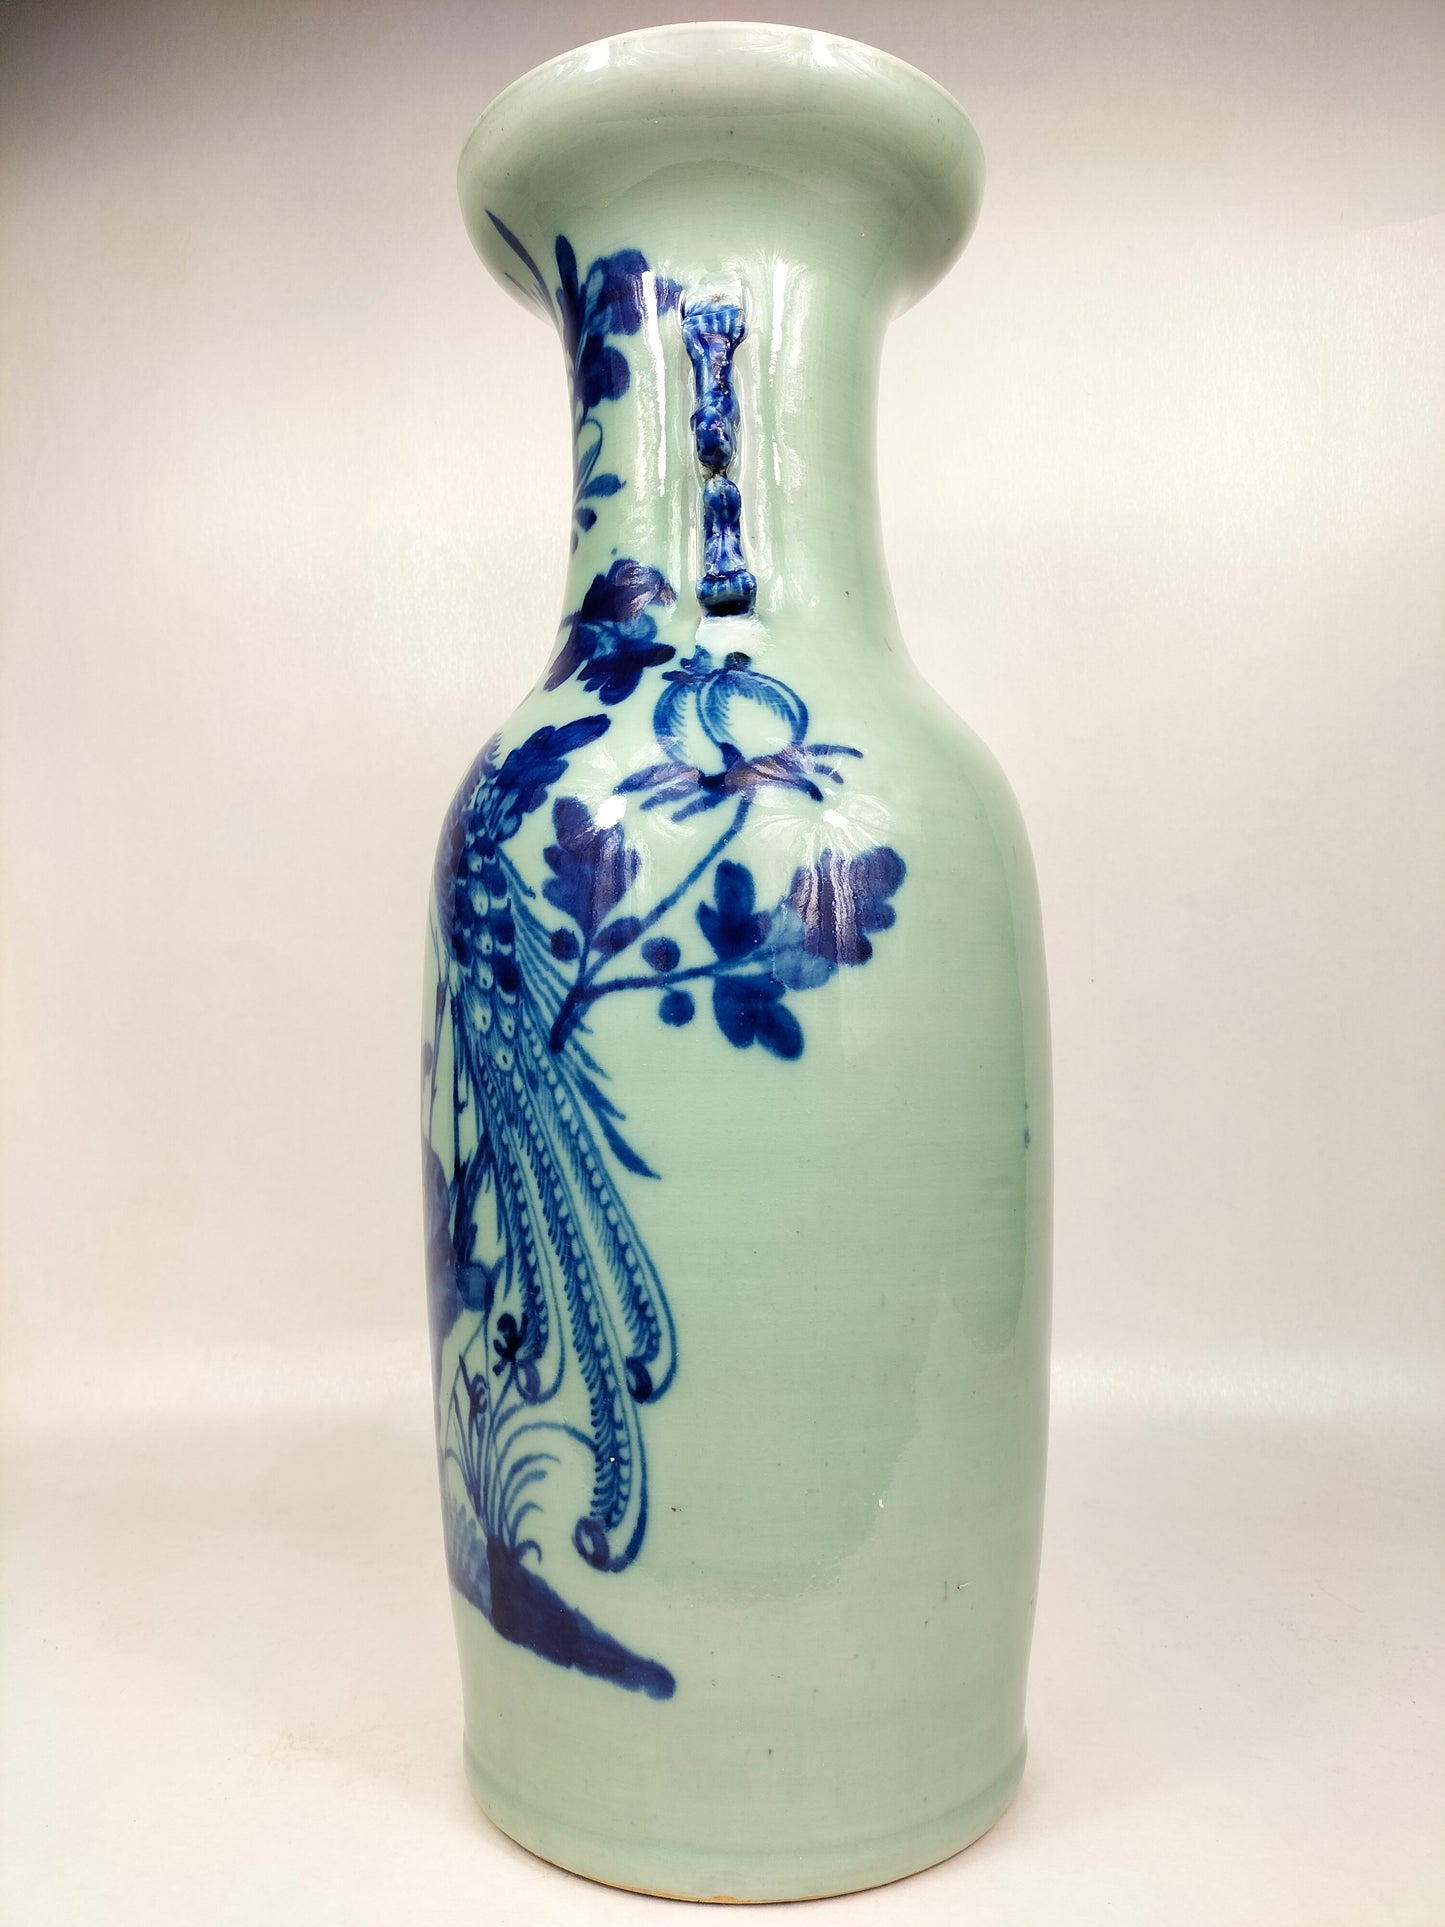 Grande vaso chinês antigo de cor celadon decorado com pássaros e flores // Dinastia Qing - século XIX